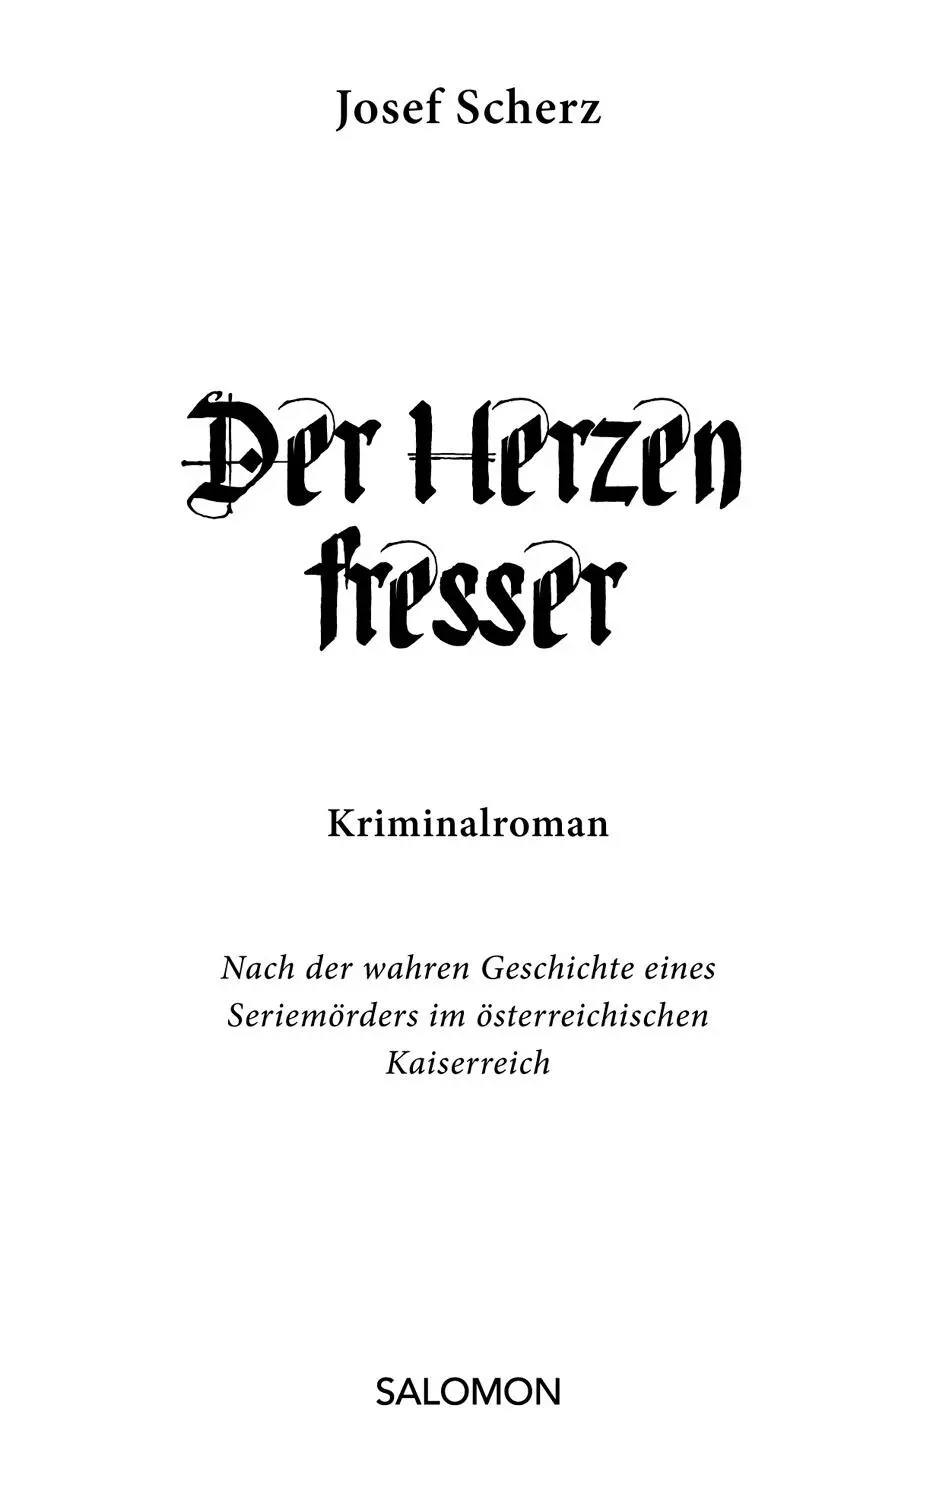 Josef Scherz Der Herzenfresser Alle Rechte vorbehalten 2017 edition a Wien - фото 1